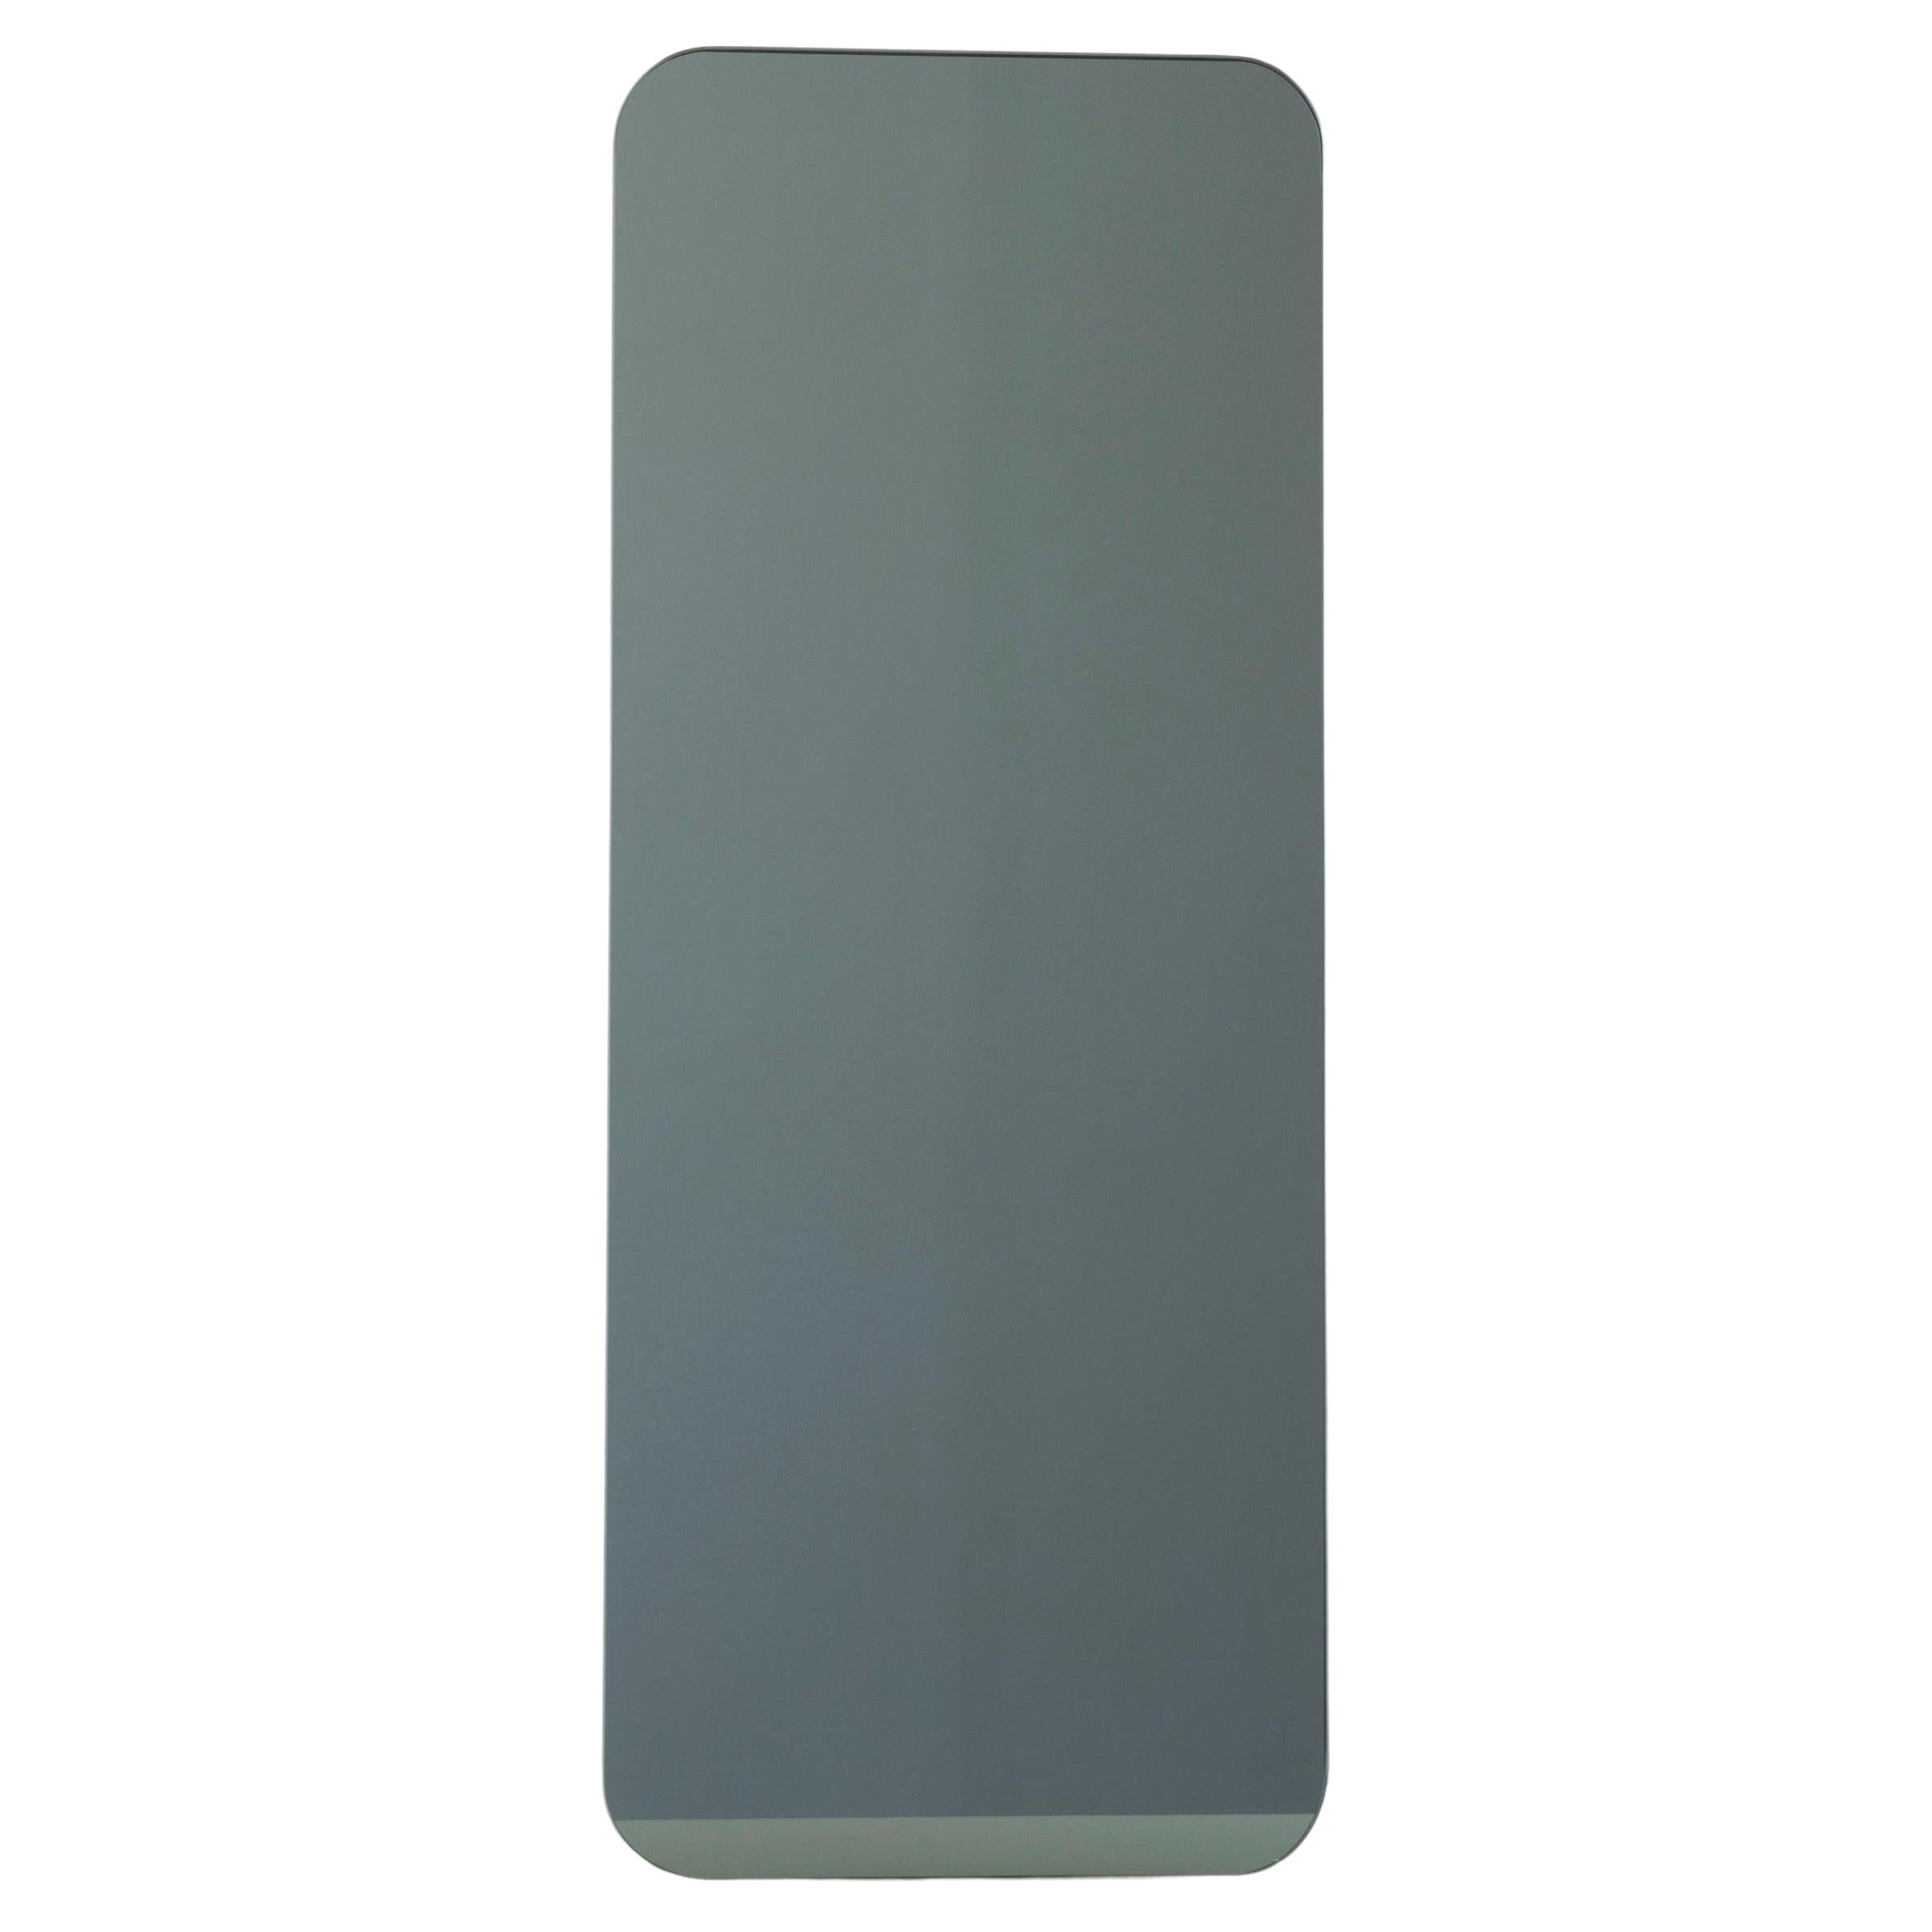 Quadris Black Tinted Rectangular Frameless Minimalist Mirror, Medium For Sale